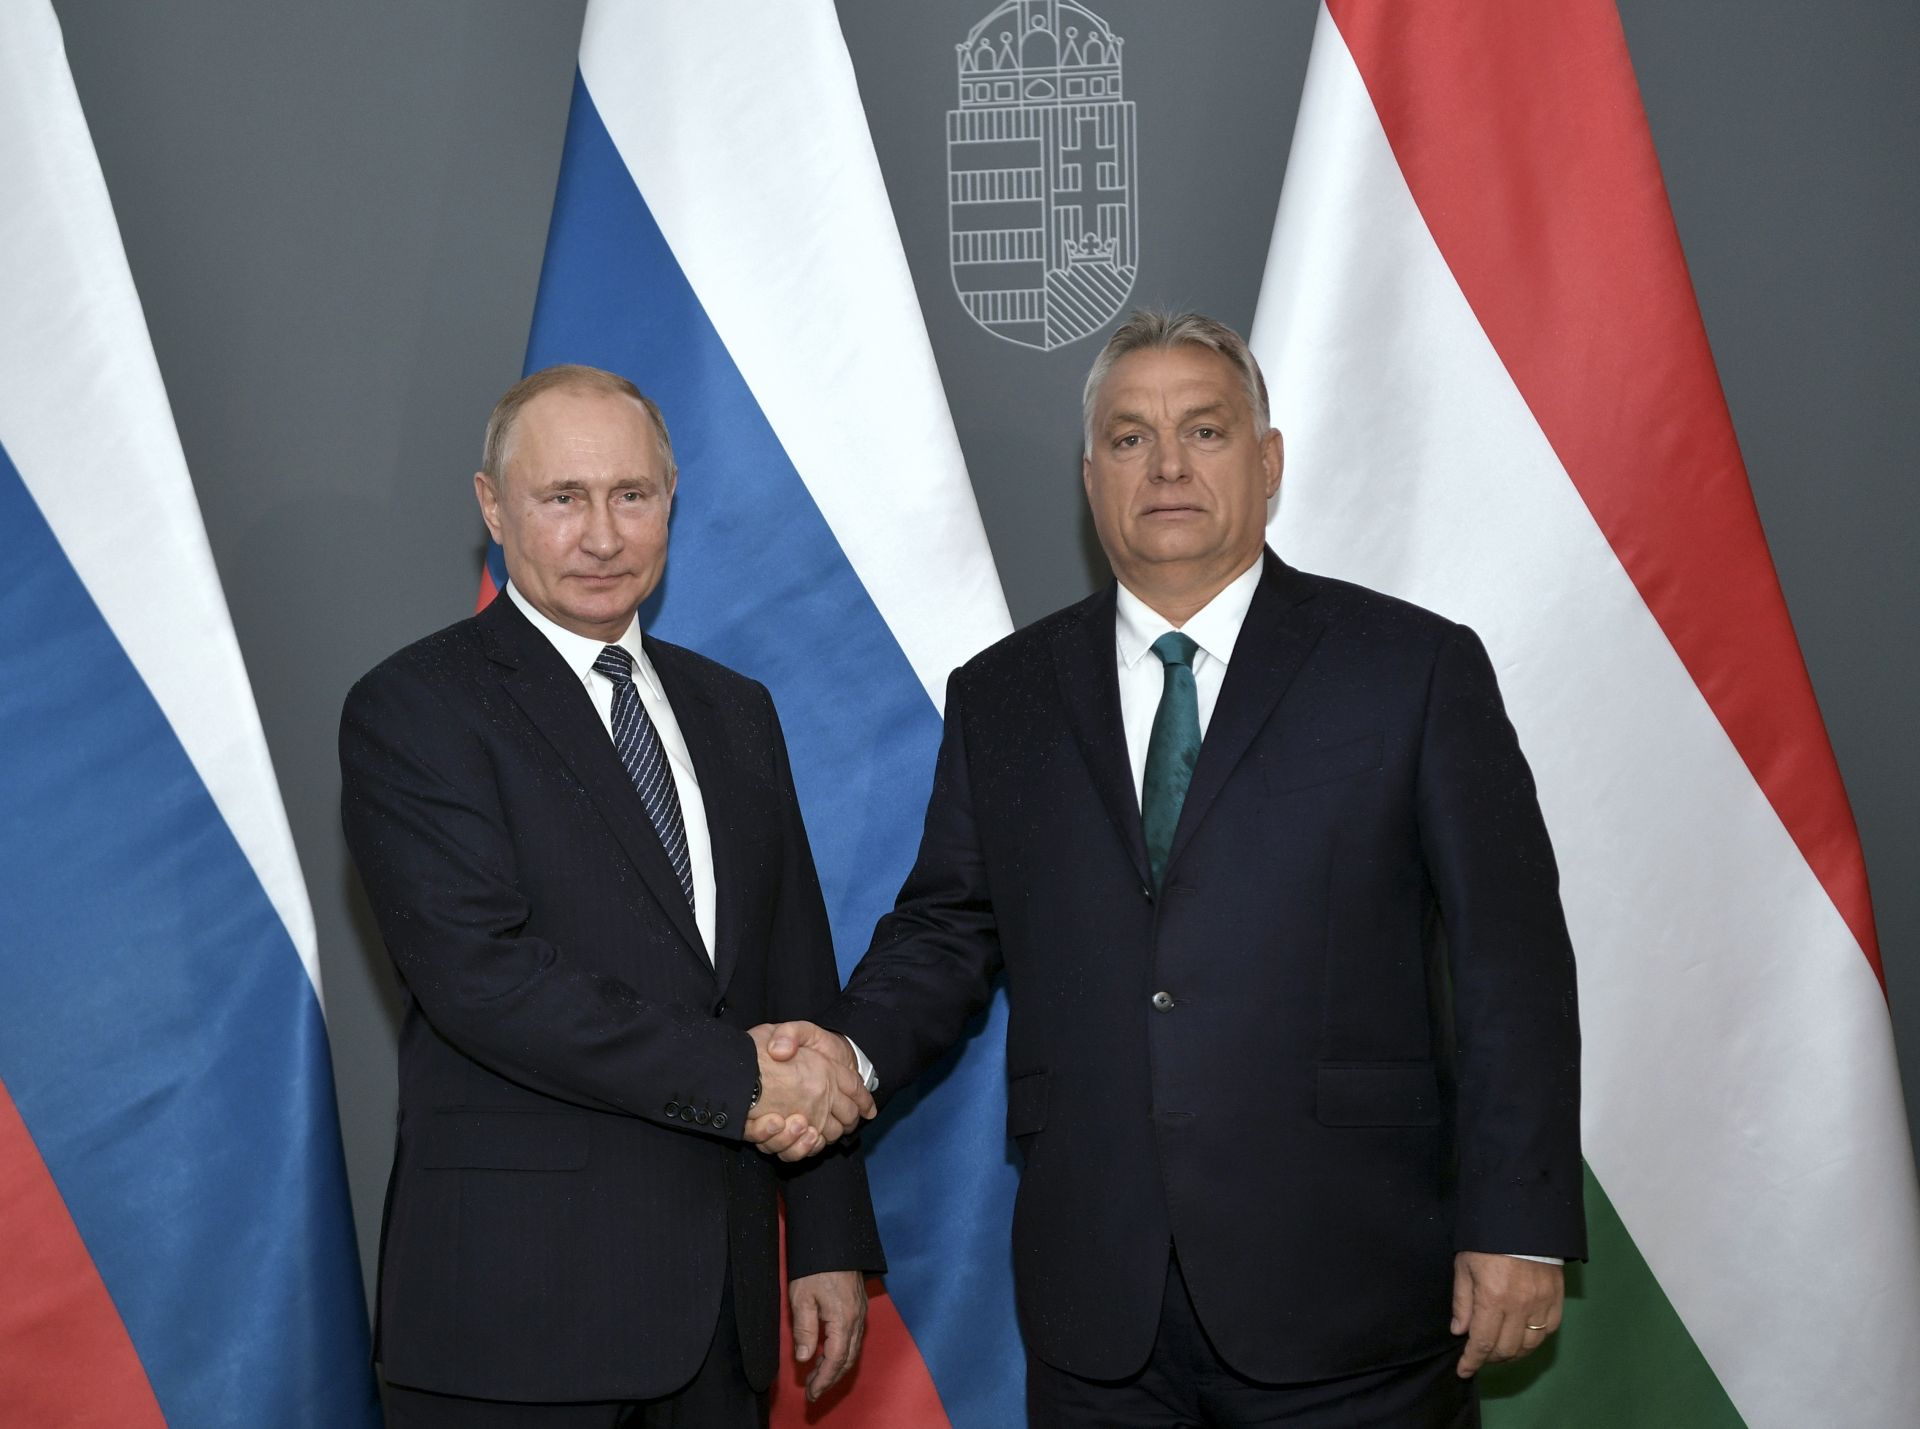 Русия би приветствала, ако Унгария се присъедини към газопровода "Турски поток", заяви днес в Будапеща руският президент Владимир Путин